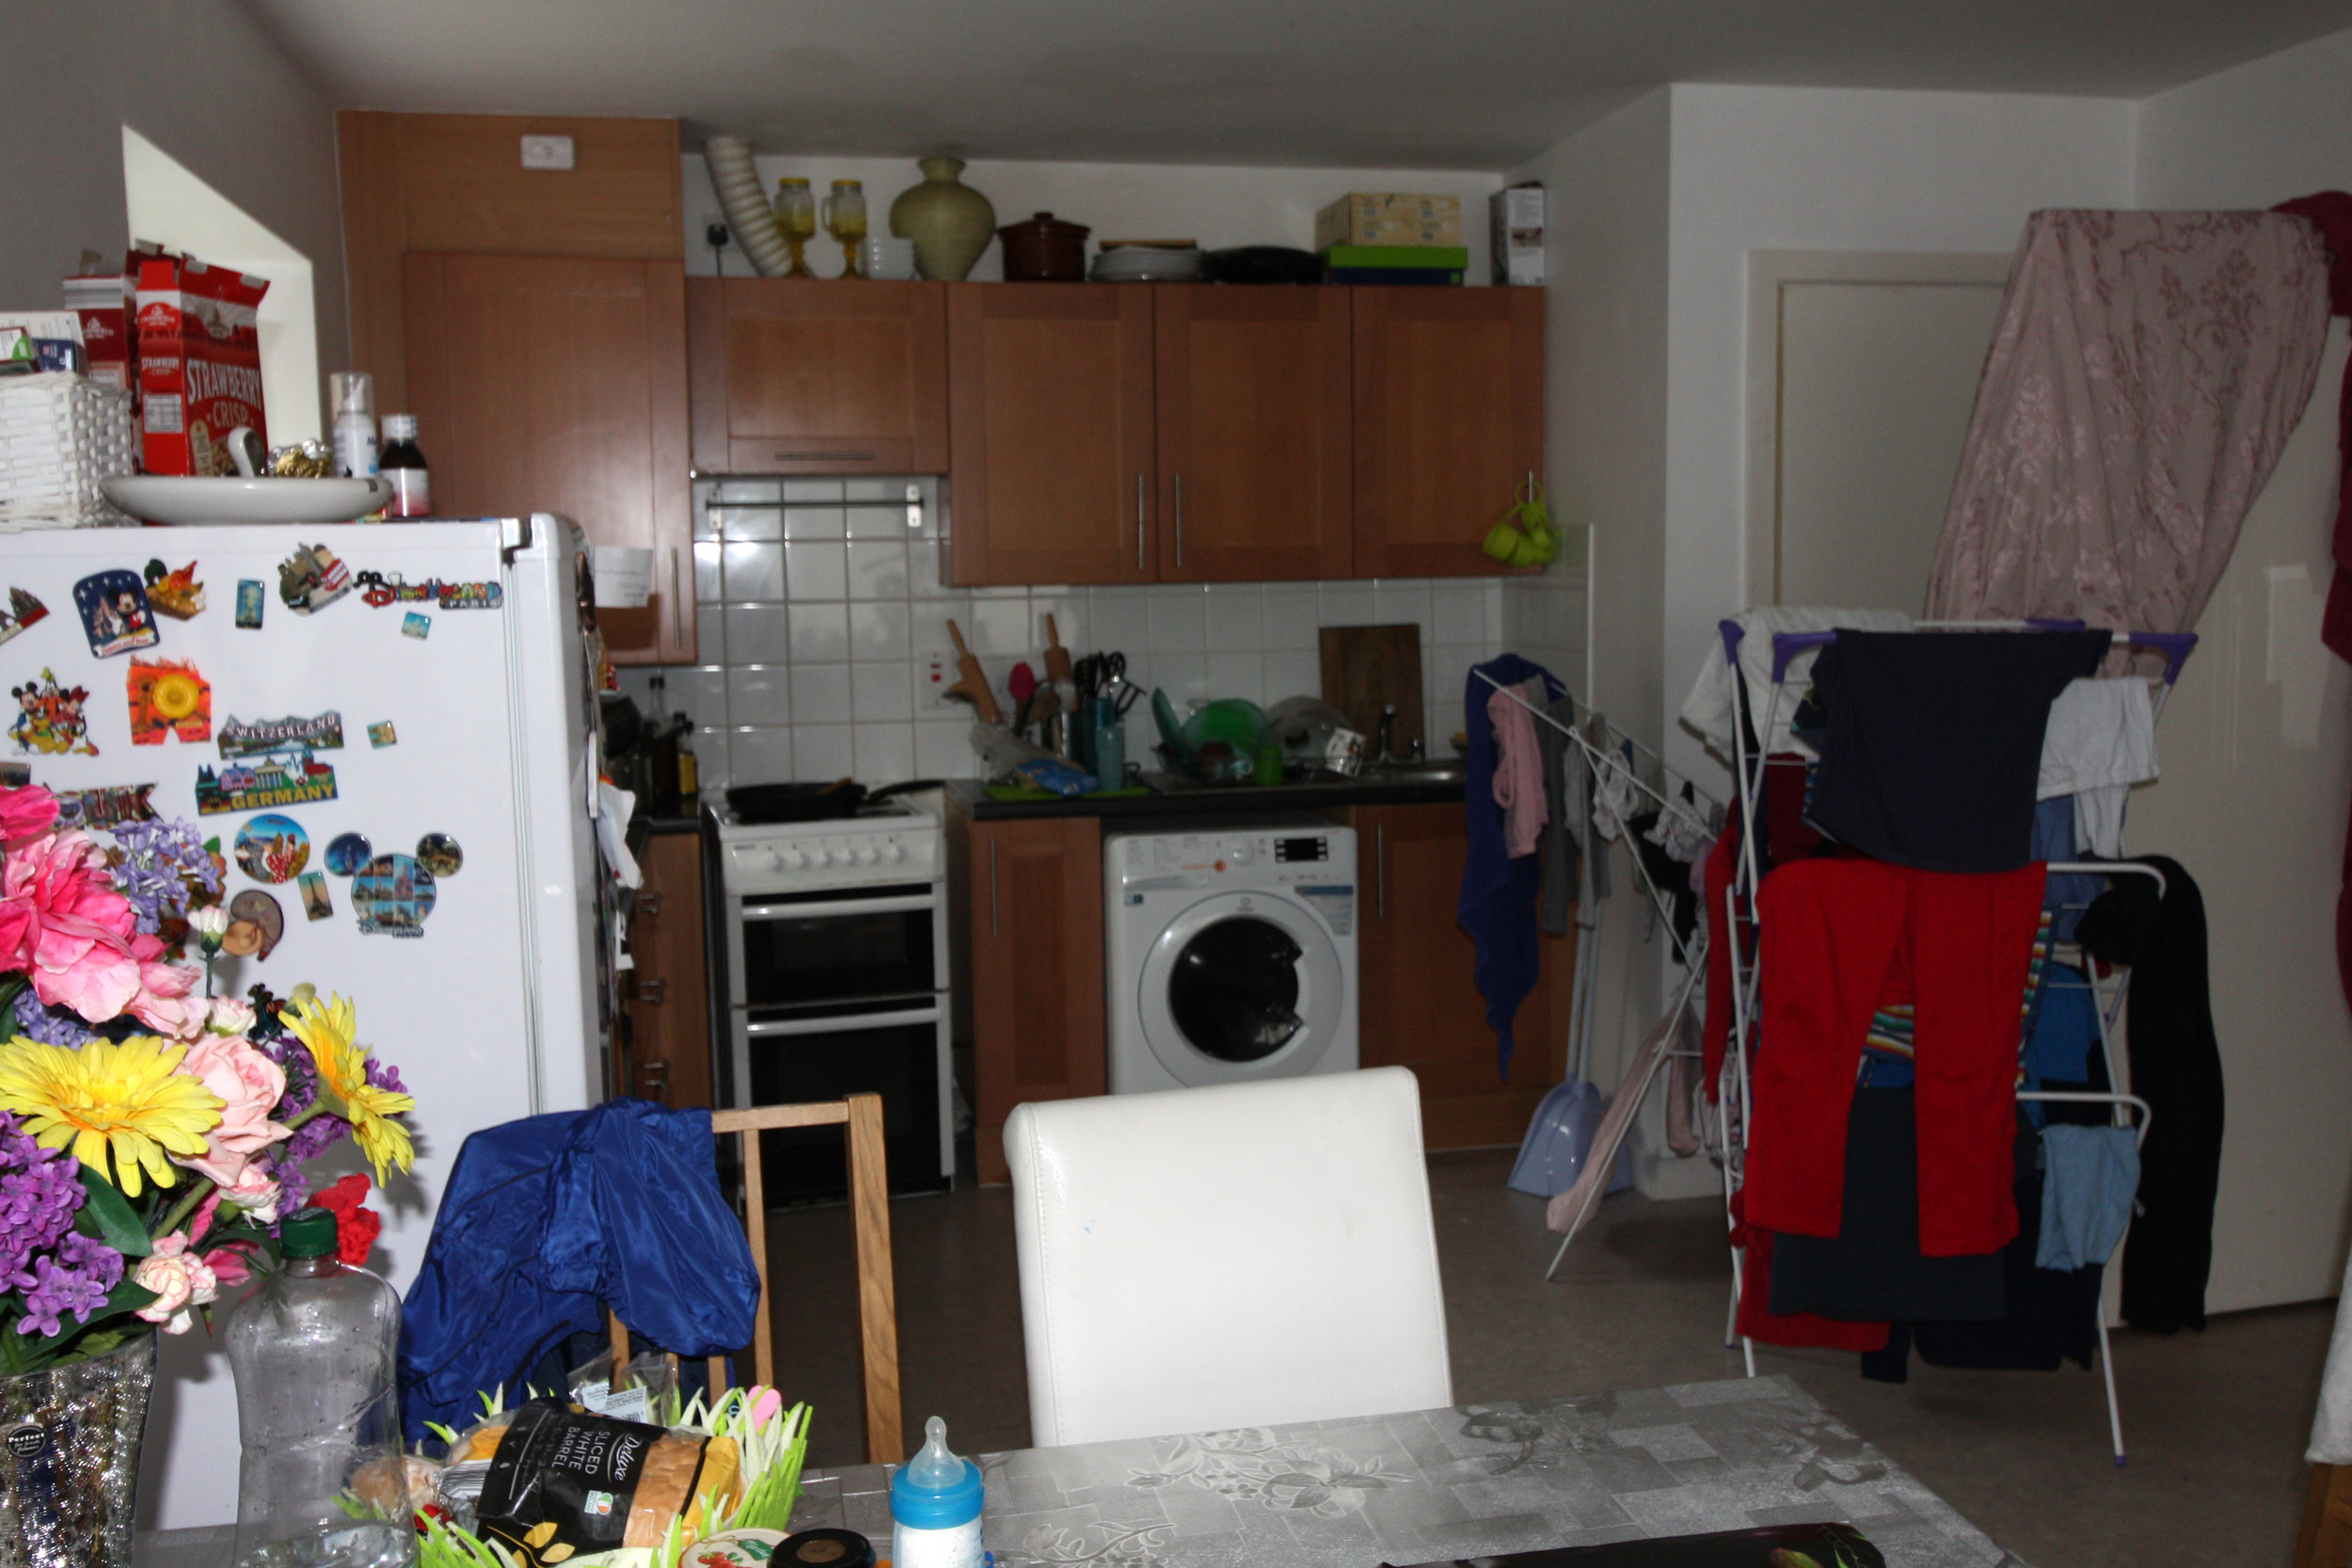 HR - Dublin 1 - Before - Living Room Kitchen 5.jpg